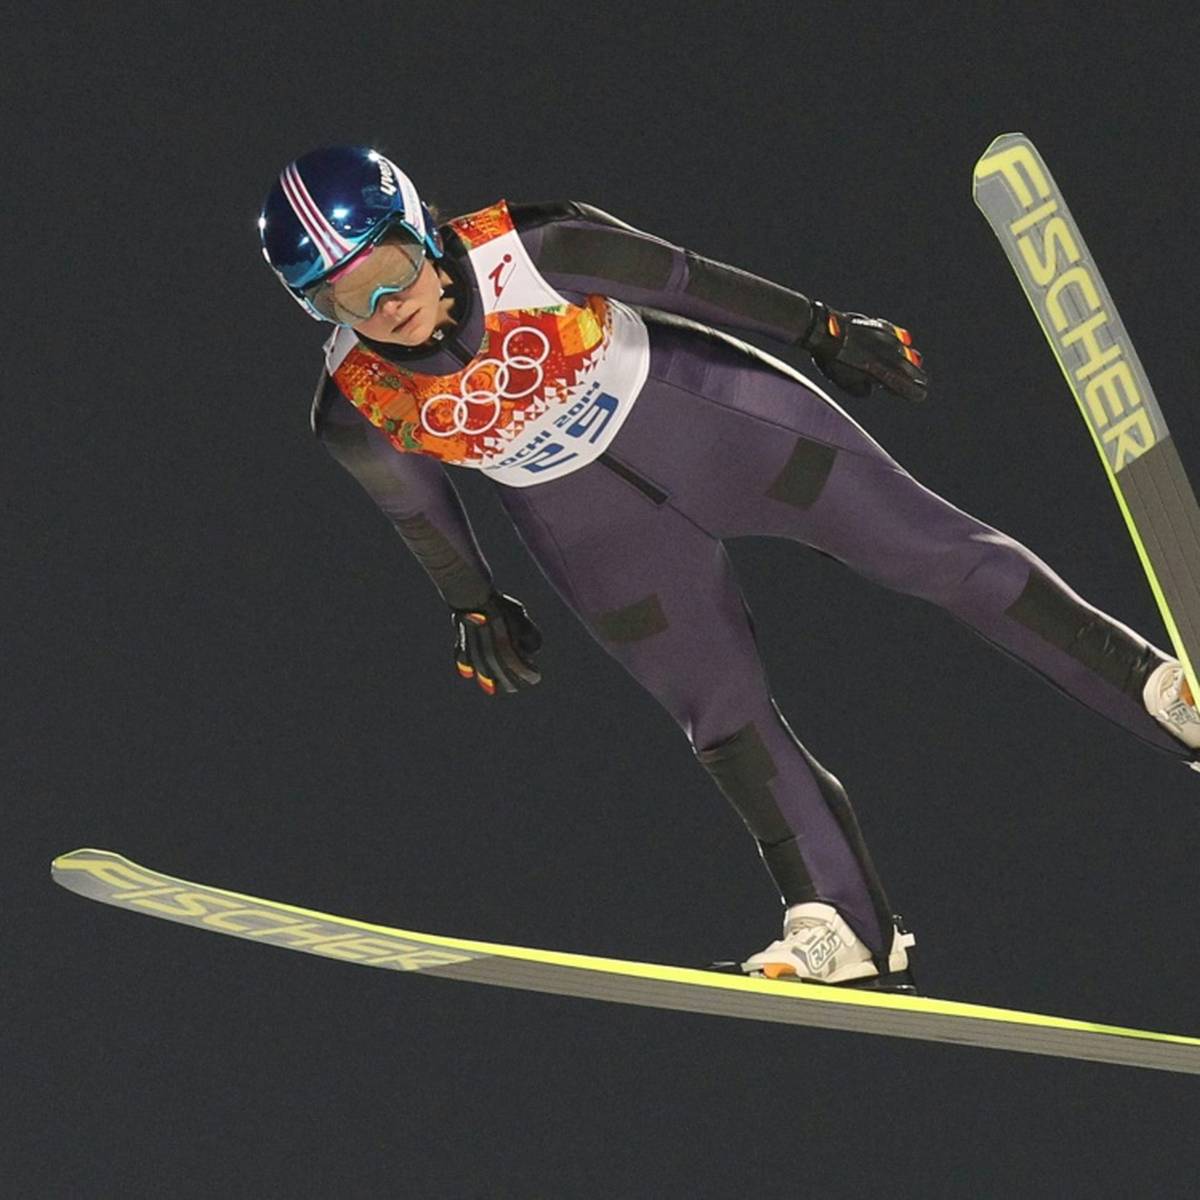 Sotschi-Olympiasiegerin Carina Vogt steht nicht im Aufgebot der deutschen Skispringerinnen für die Winterspiele in Peking (4. bis 20. Februar).